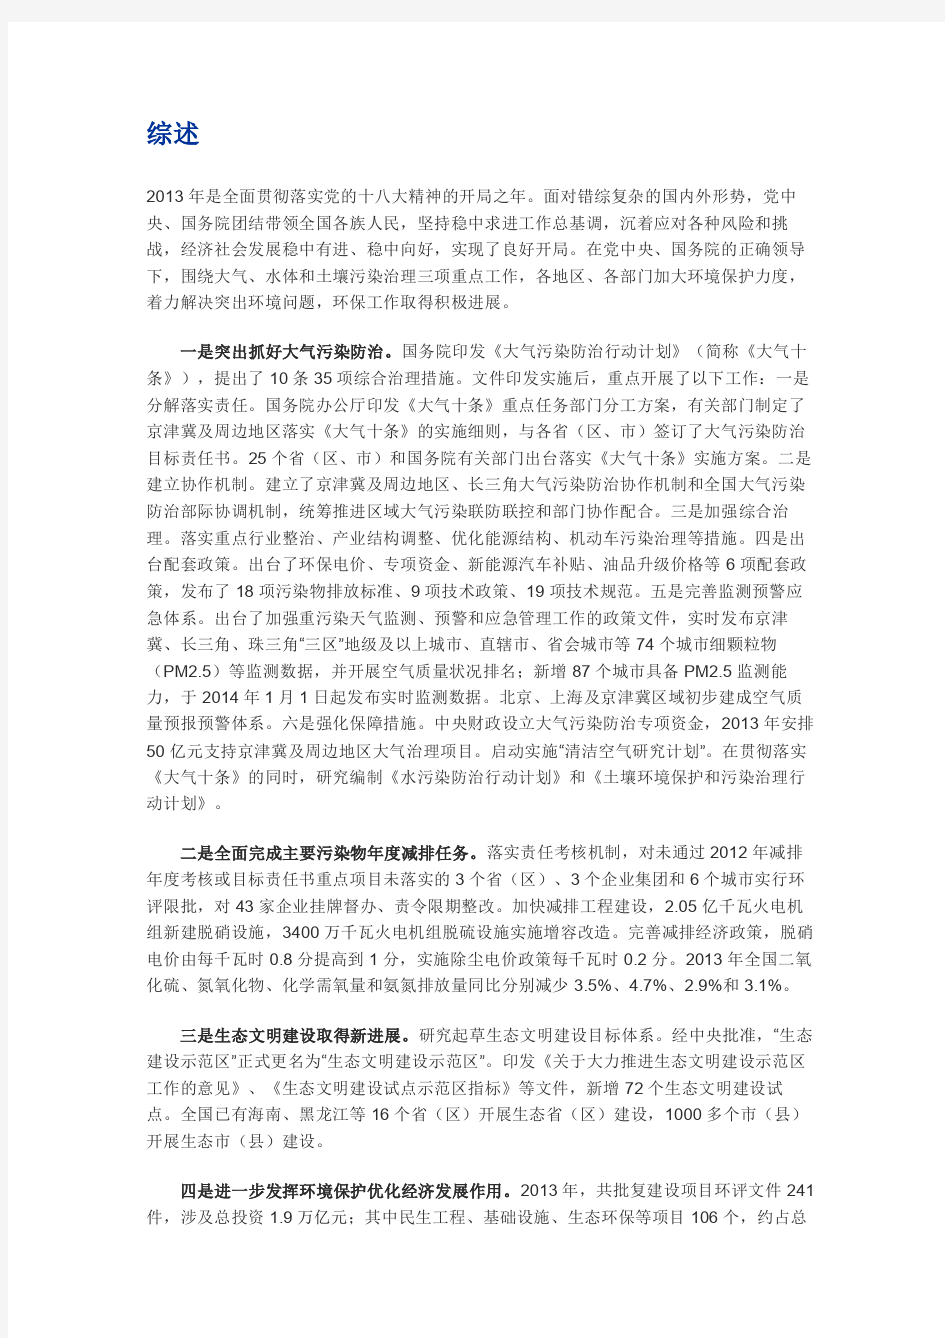 2013年中国环境状况公报